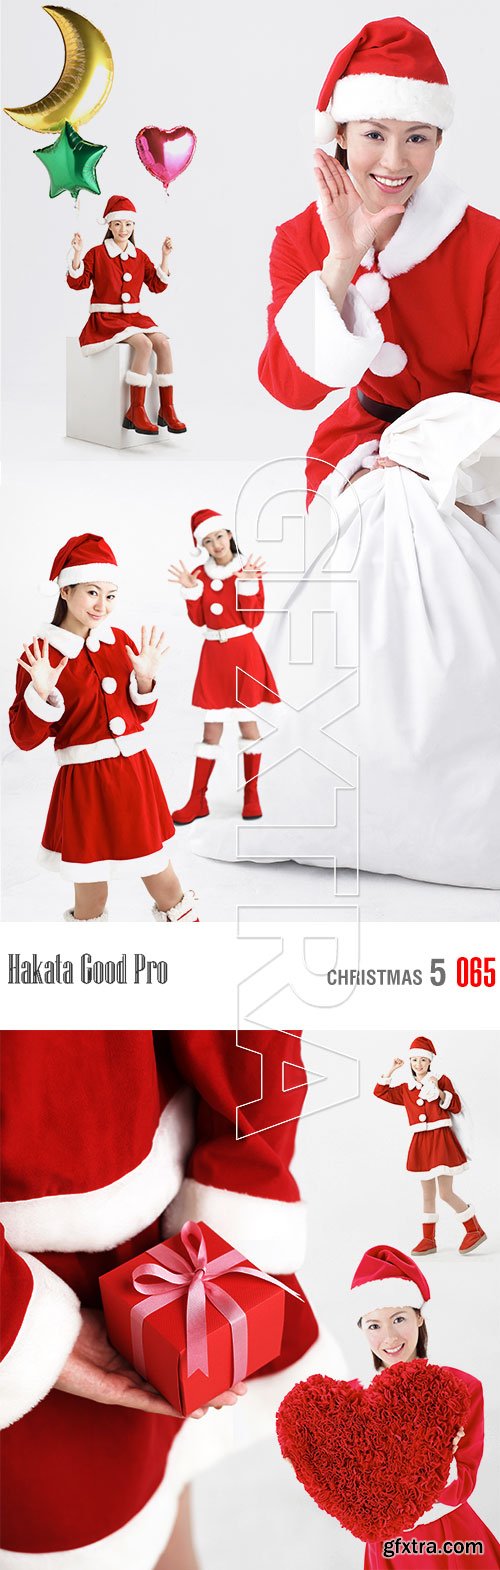 Hakata Good Pro HG065 Christmas 5